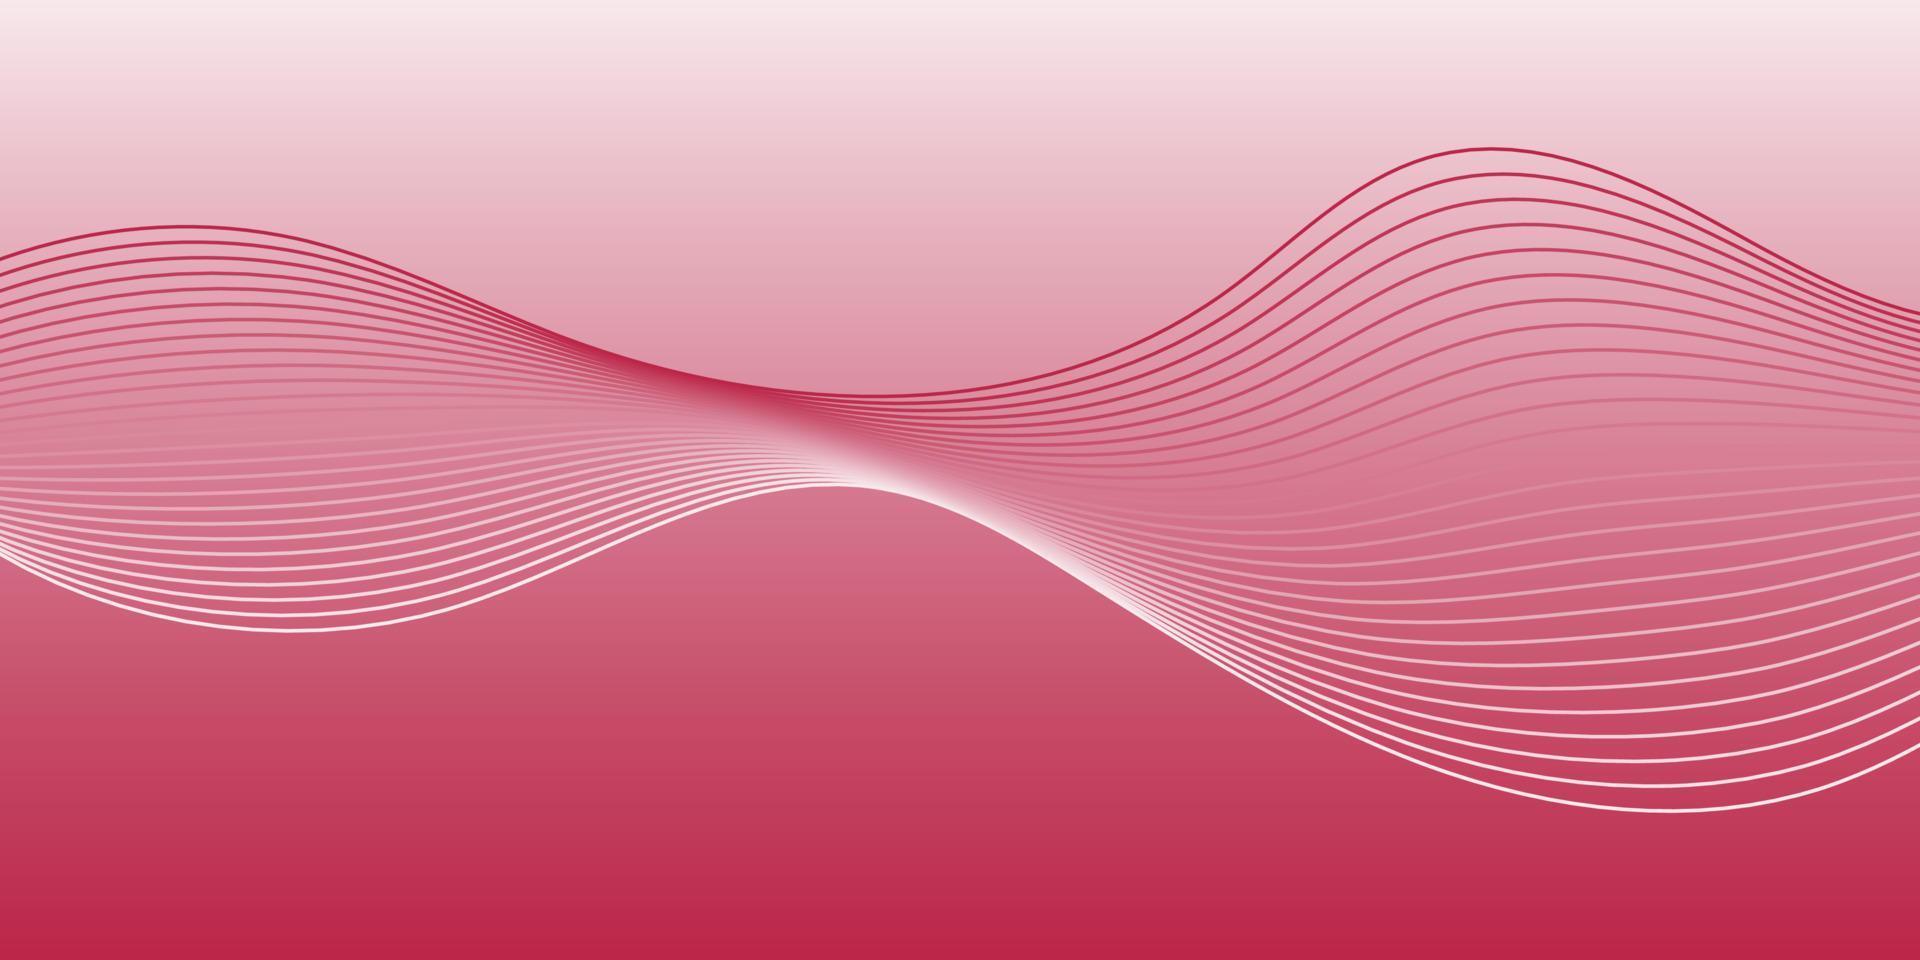 viva magenta bakgrund. abstrakt Vinka. böjd vågig linje, slät rand. röd, djup rosa, hallon lutning Färg. vektor horisontell illustration.